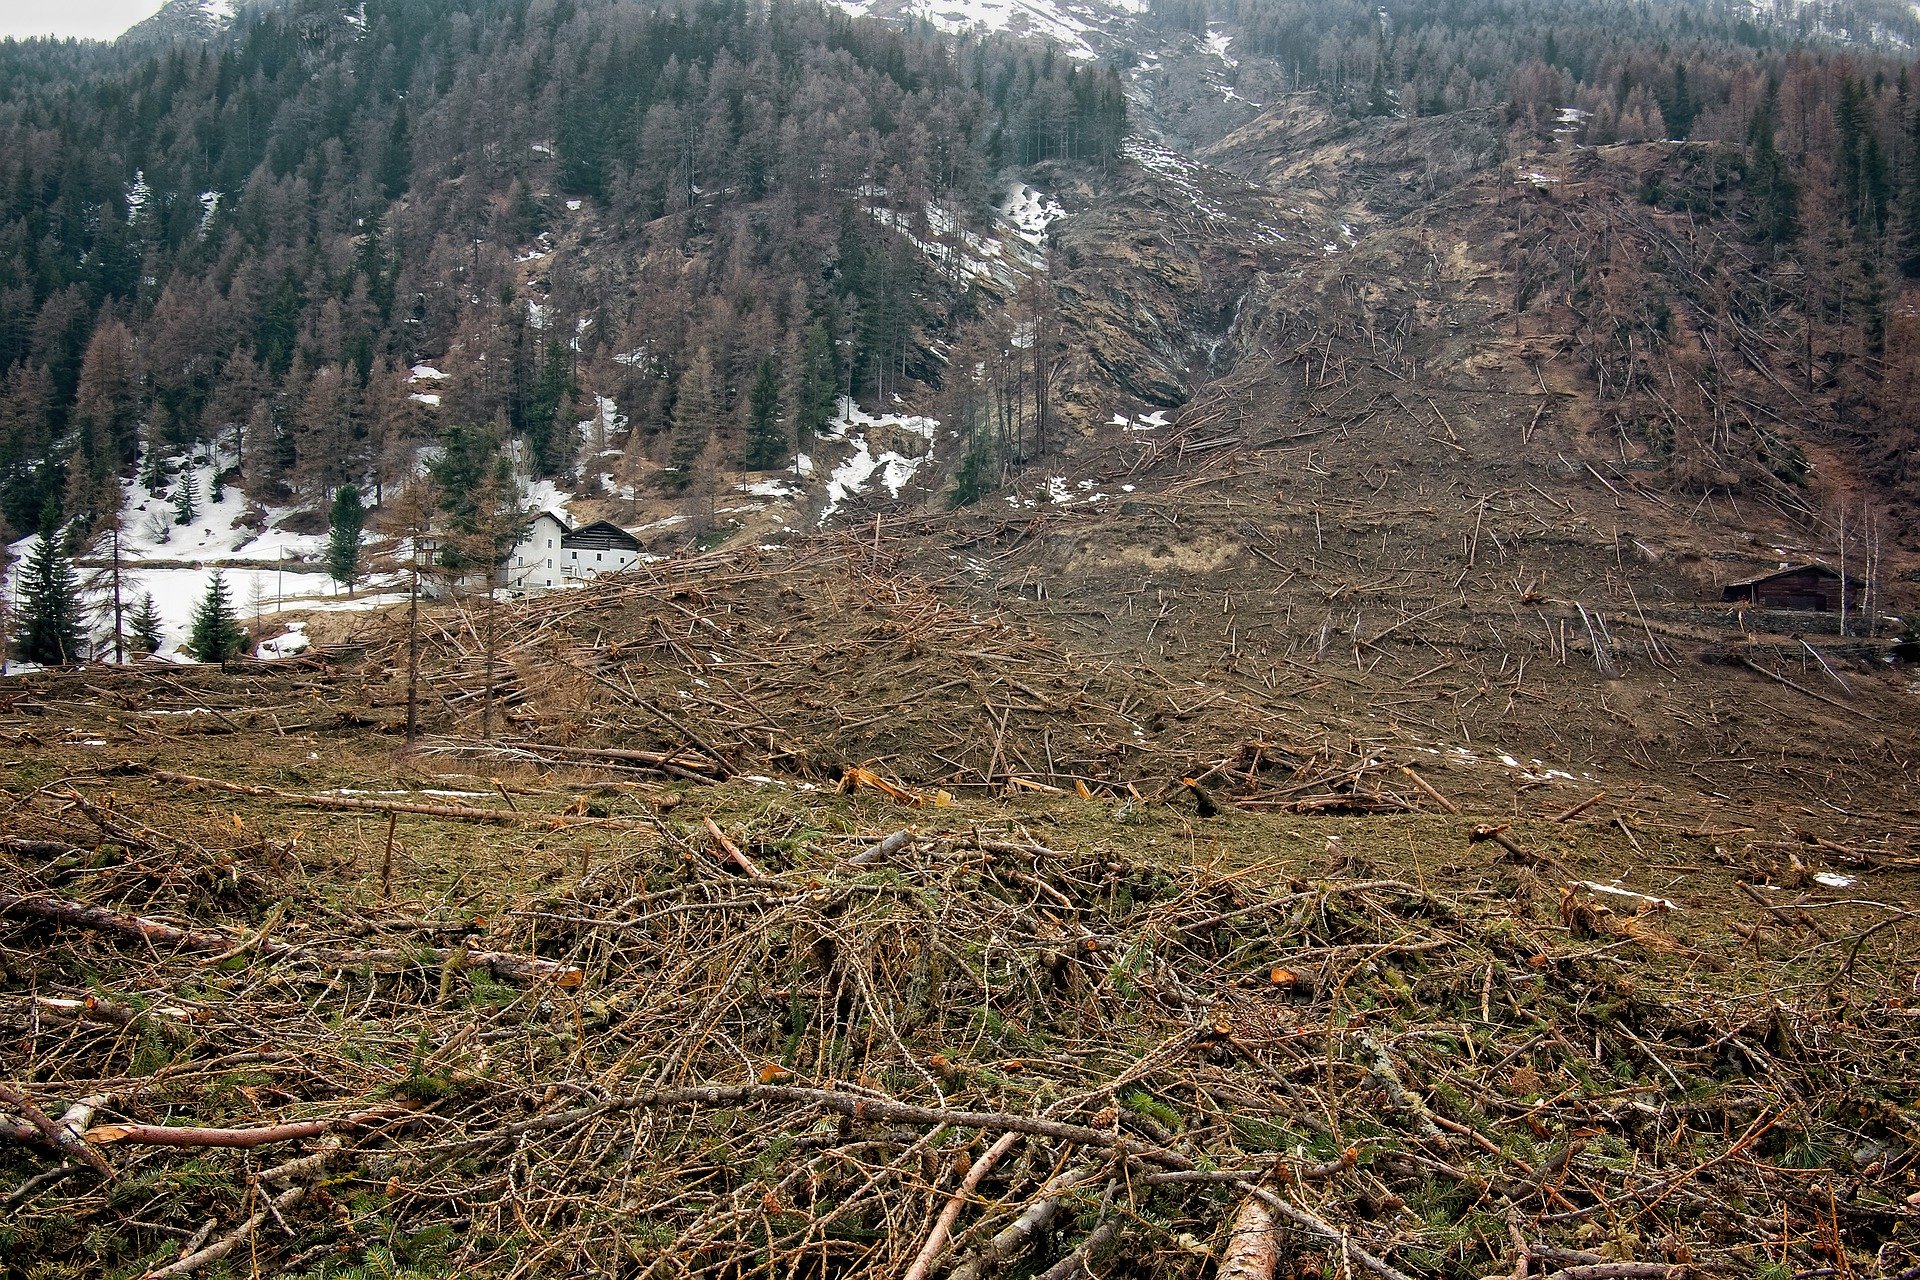 Bossen in Midden-Europa onder druk door klimaatverandering